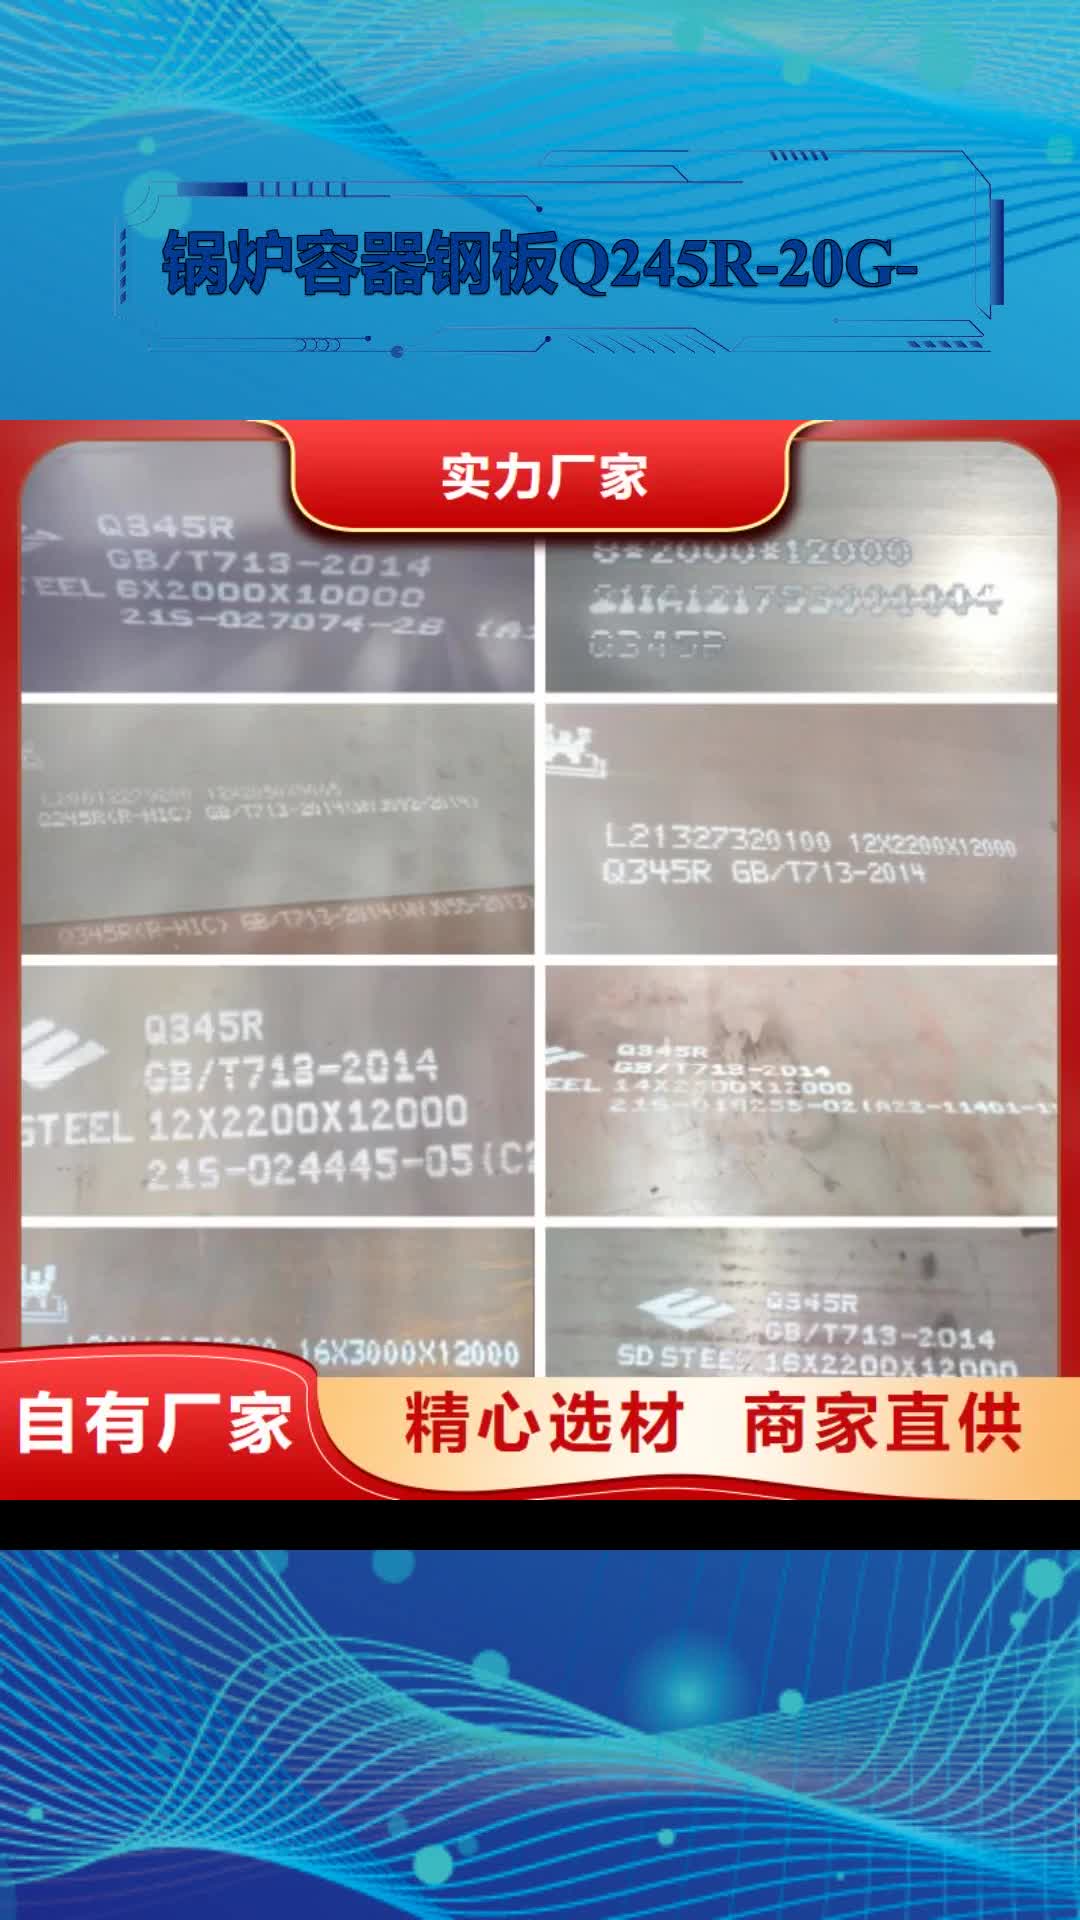 【惠州 锅炉容器钢板Q245R-20G-Q345R 锅炉容器板细节决定成败】